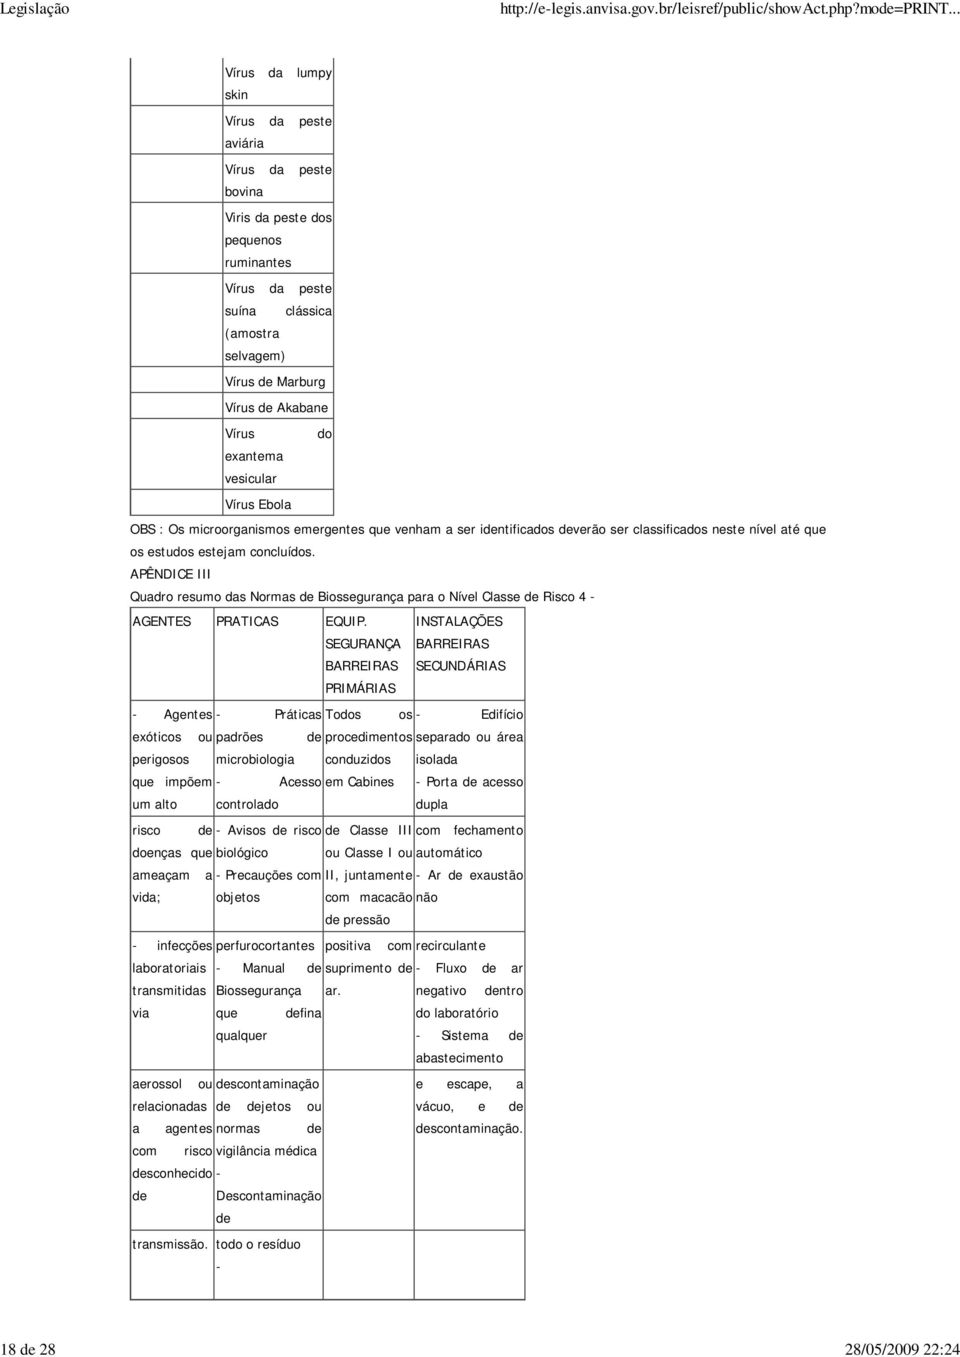 APÊNDICE III Quadro resumo das Normas de Biossegurança para o Nível Classe de Risco 4 - AGENTES PRATICAS EQUIP.